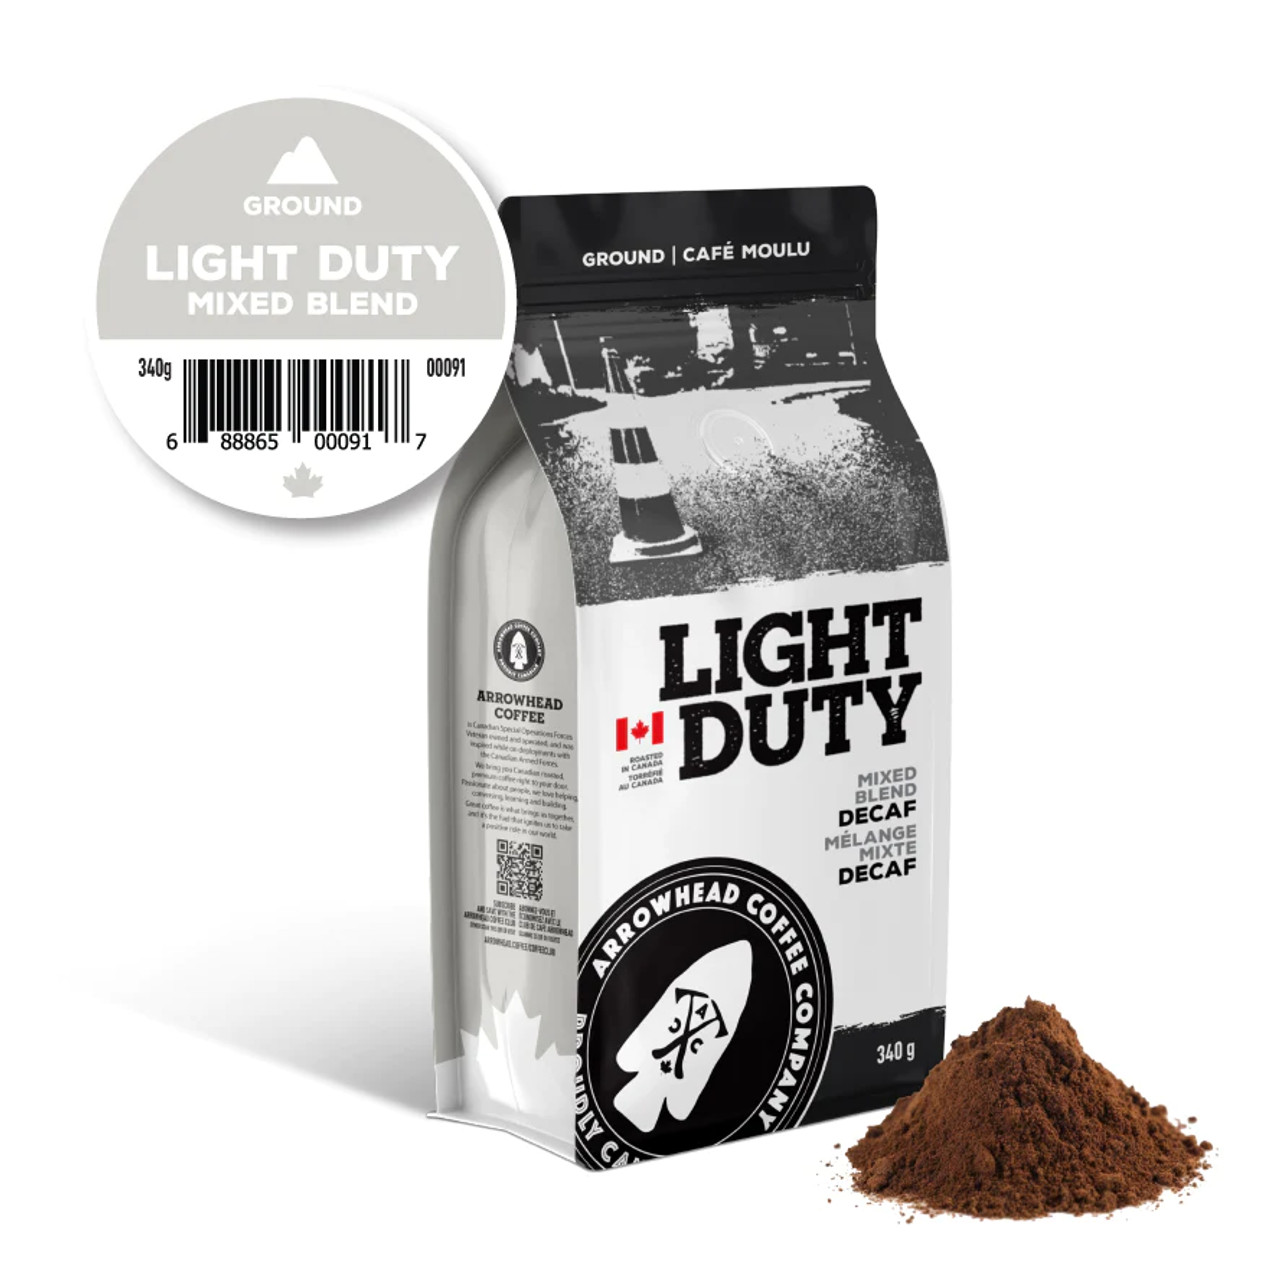 Arrowhead Coffee, Light Duty - Mix Blend - Dark DECAF Coffee, 340g